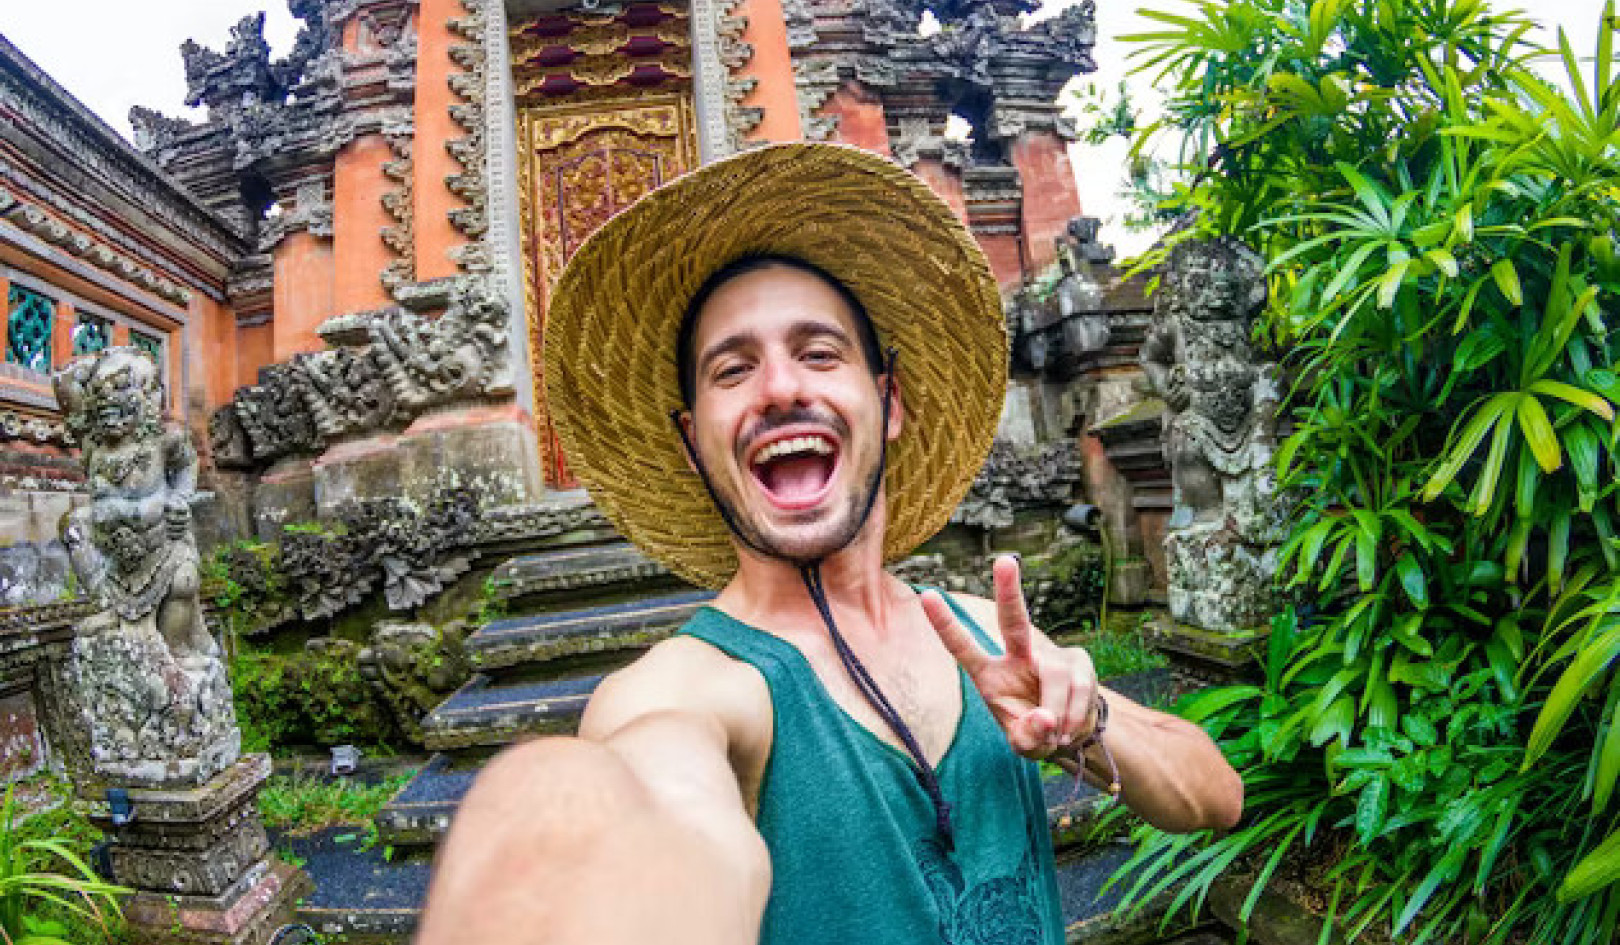 L'impact d'Instagram sur le comportement des touristes : comment voyager avec respect